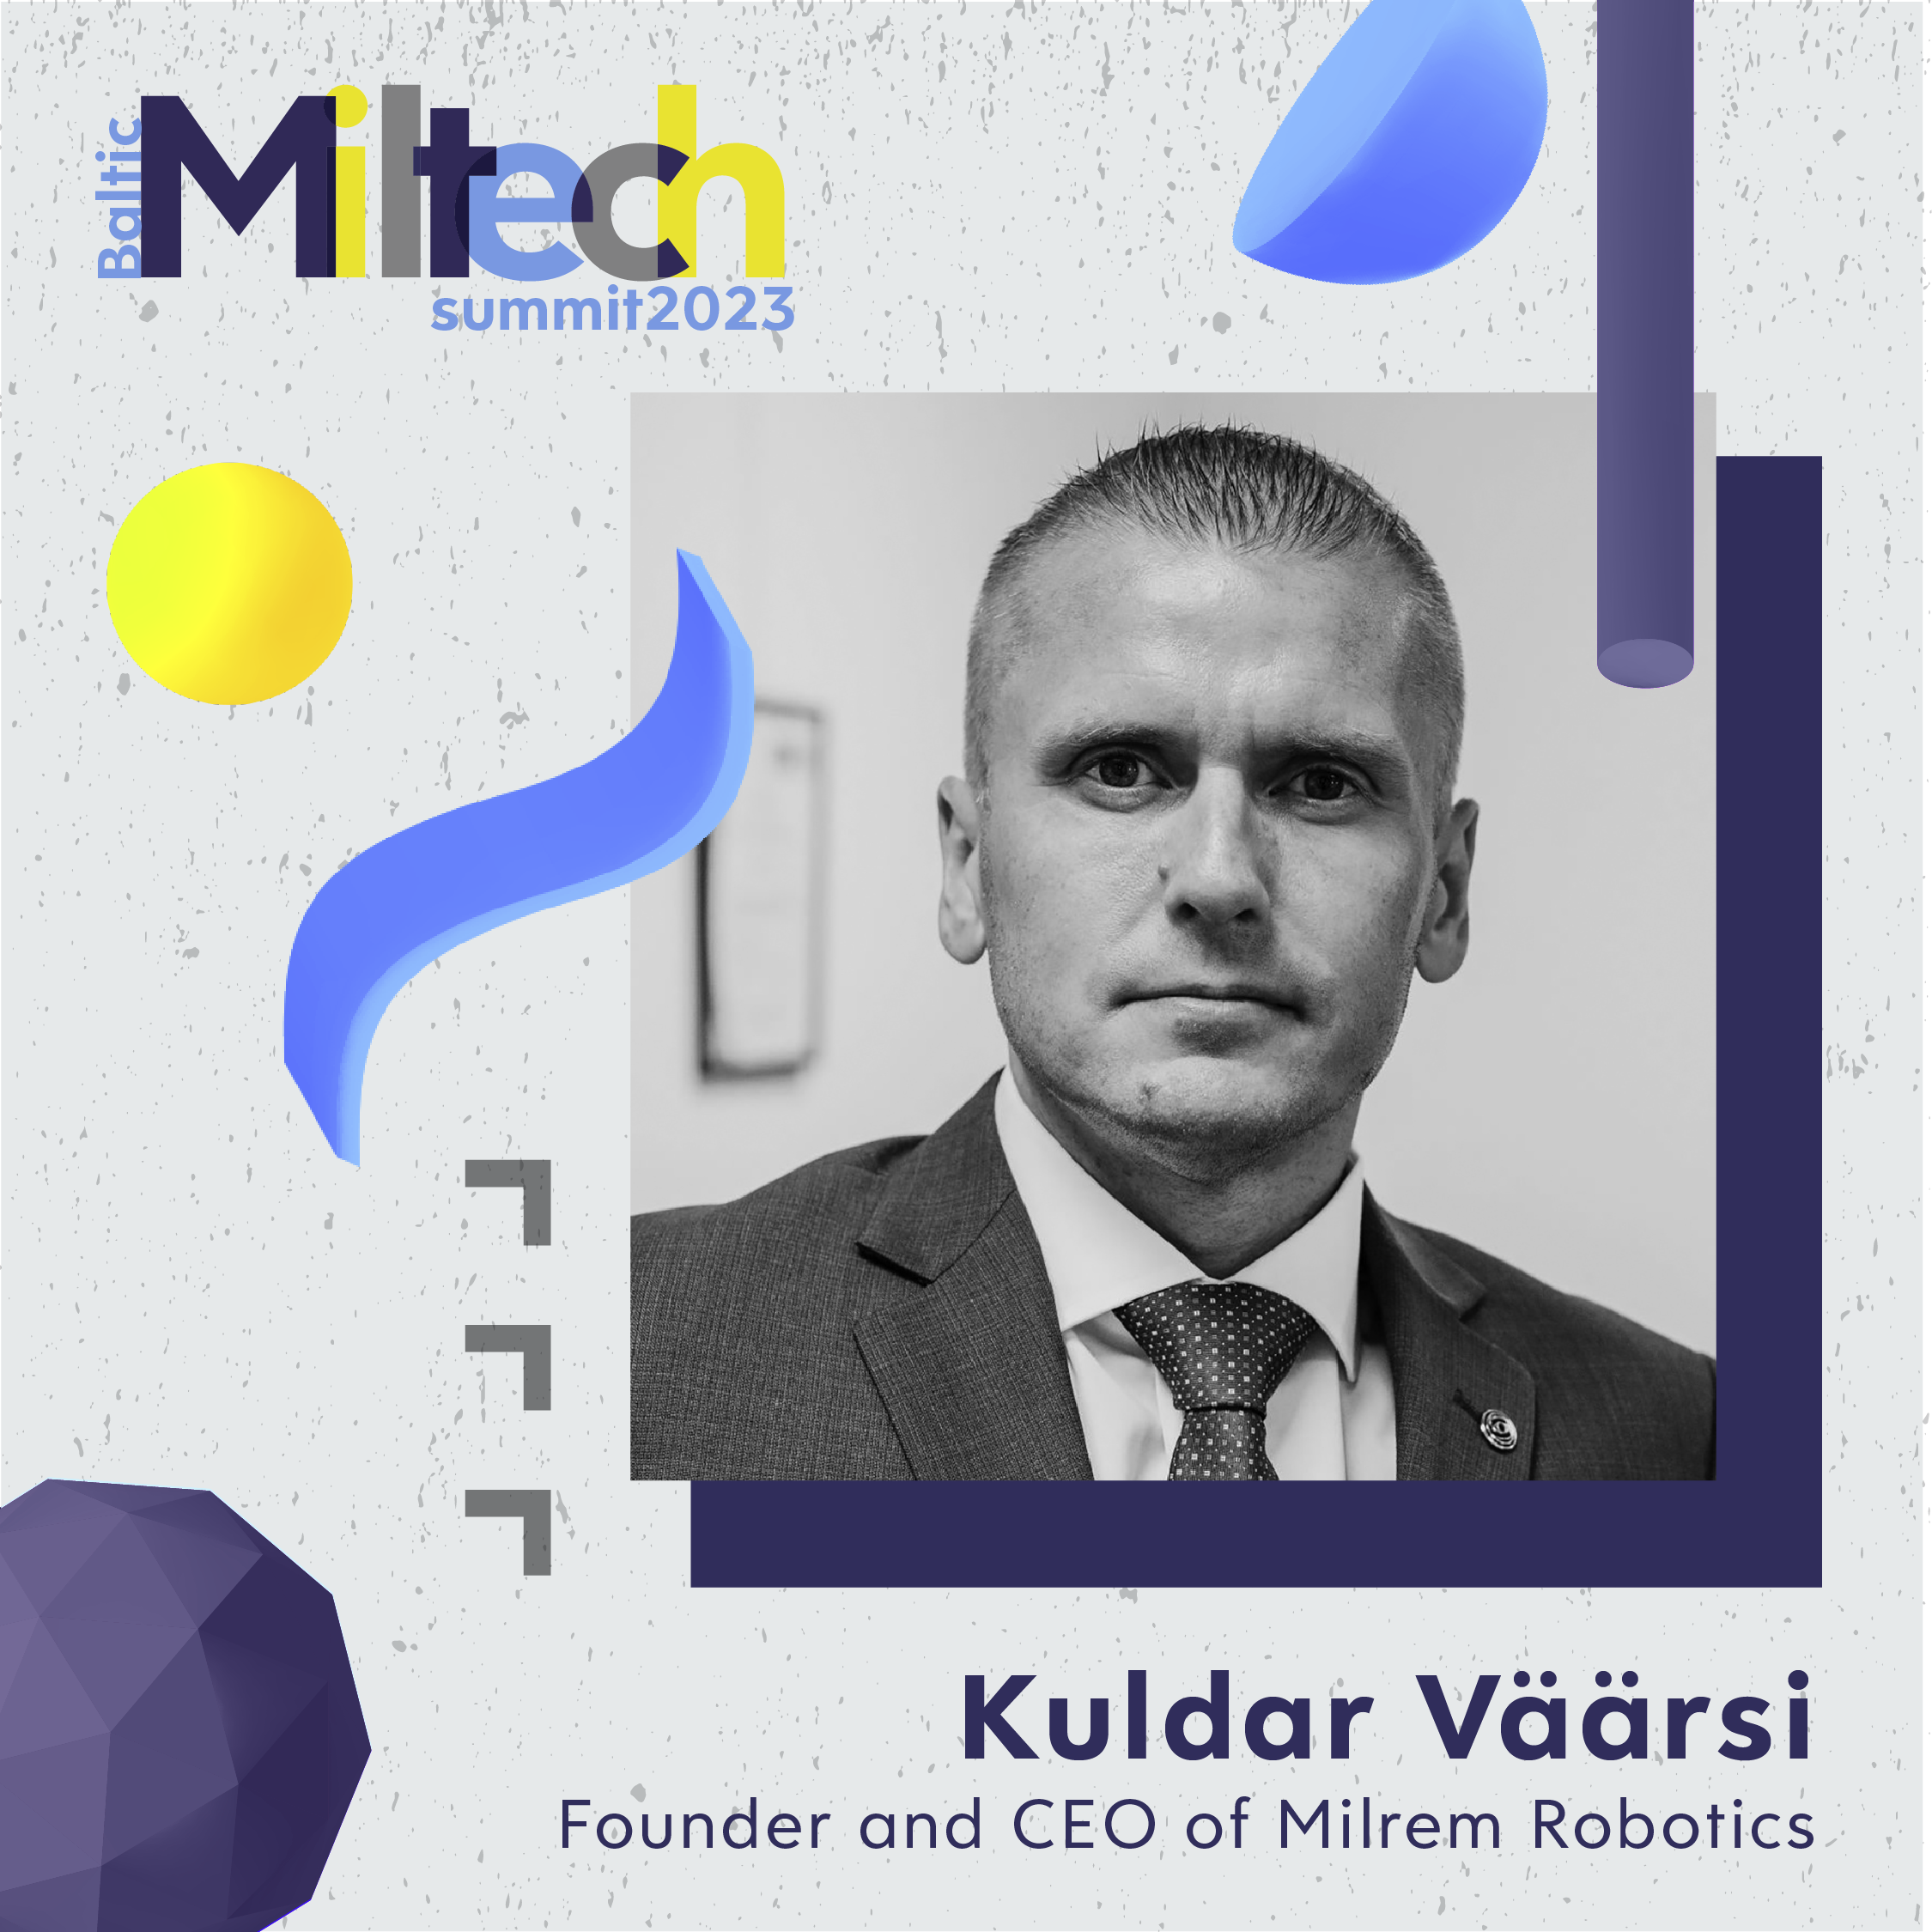 Confirmed – Kuldar Väärsi of Milrem Robotics is joining the Baltic Miltech Summit 2023